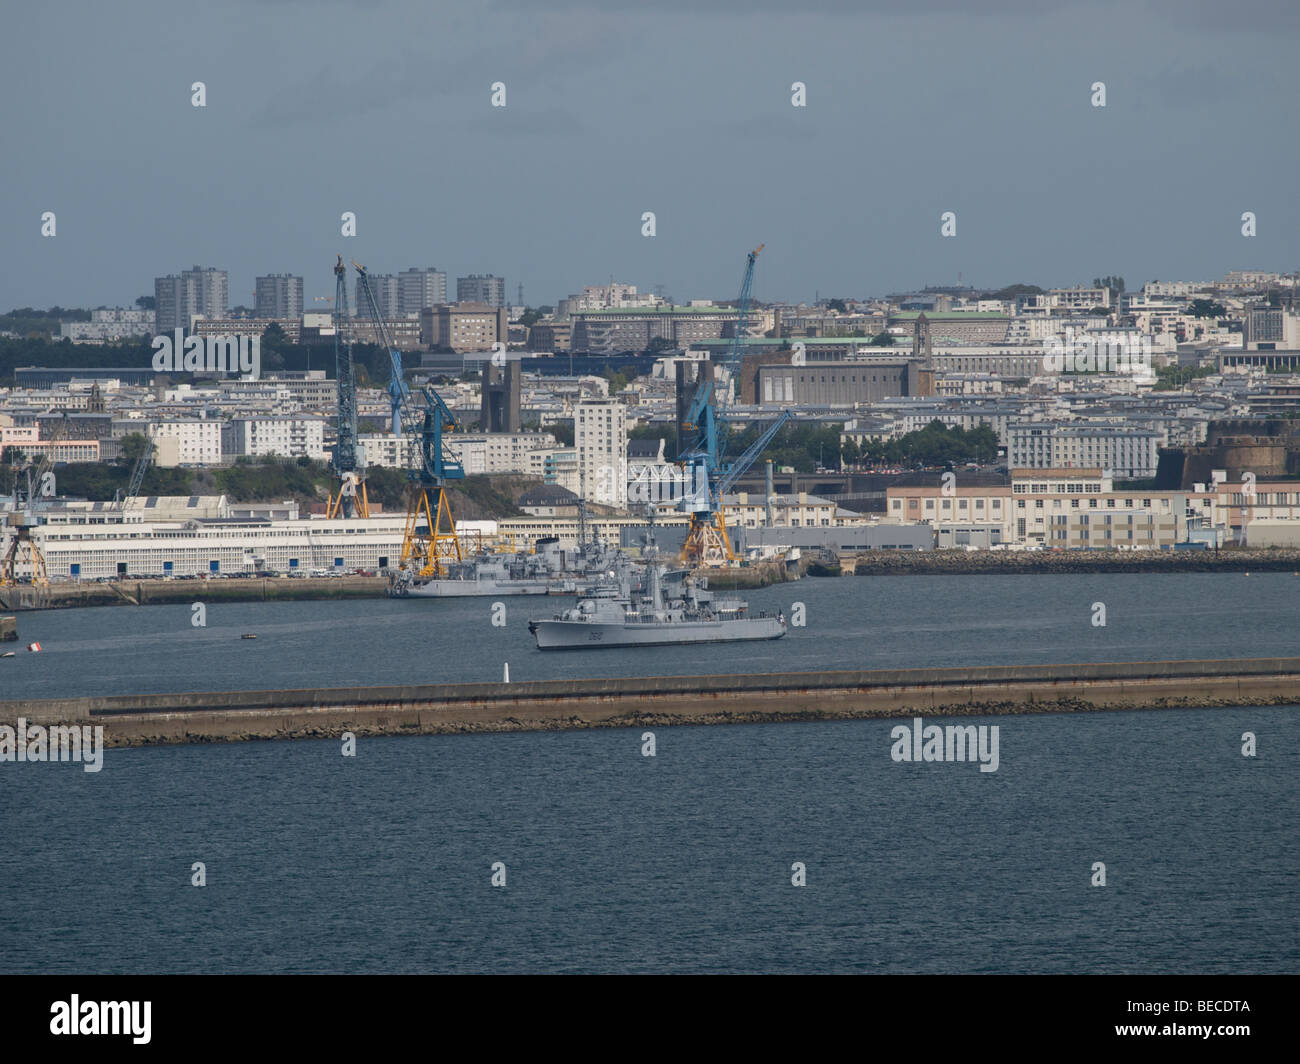 La ville de Brest a une grande base de la marine, stratégiquement placé sur la côte de l'océan Atlantique. Brest, Bretagne, France Banque D'Images